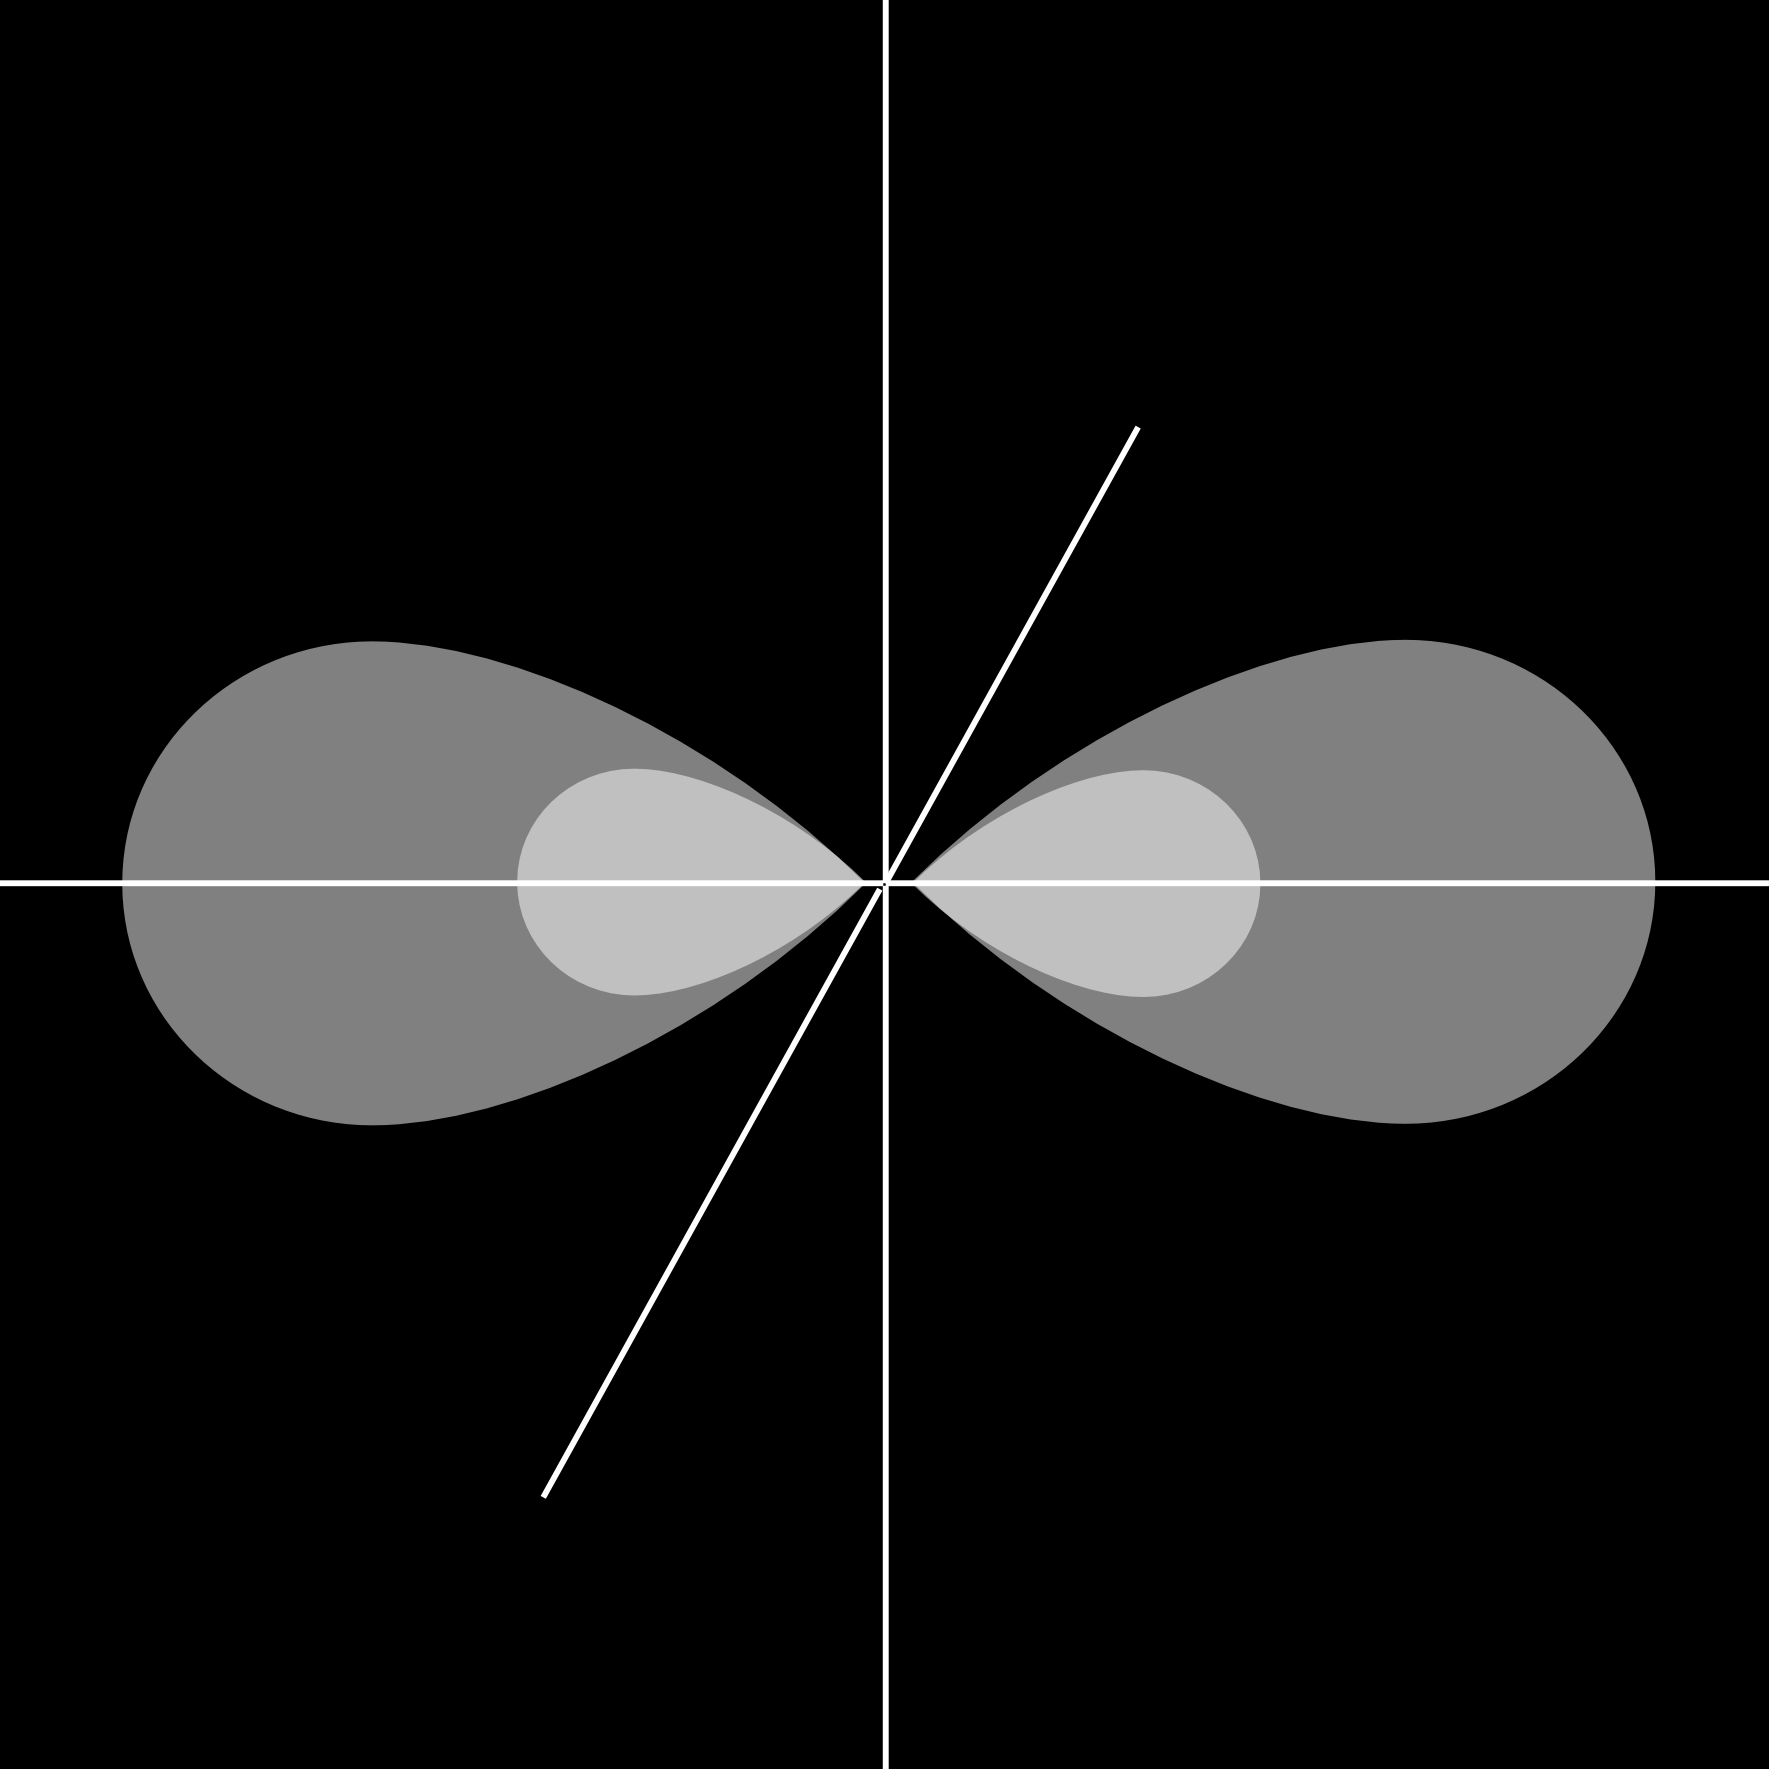 lenstoffatomen richtig beschreiben. Die jeweils nicht für die Hybridisierung verwendeten p-orbitale bilden zusätzliche Bindungen abseits der direkten Kernverbindungsachse (π-bindung, siehe oben).